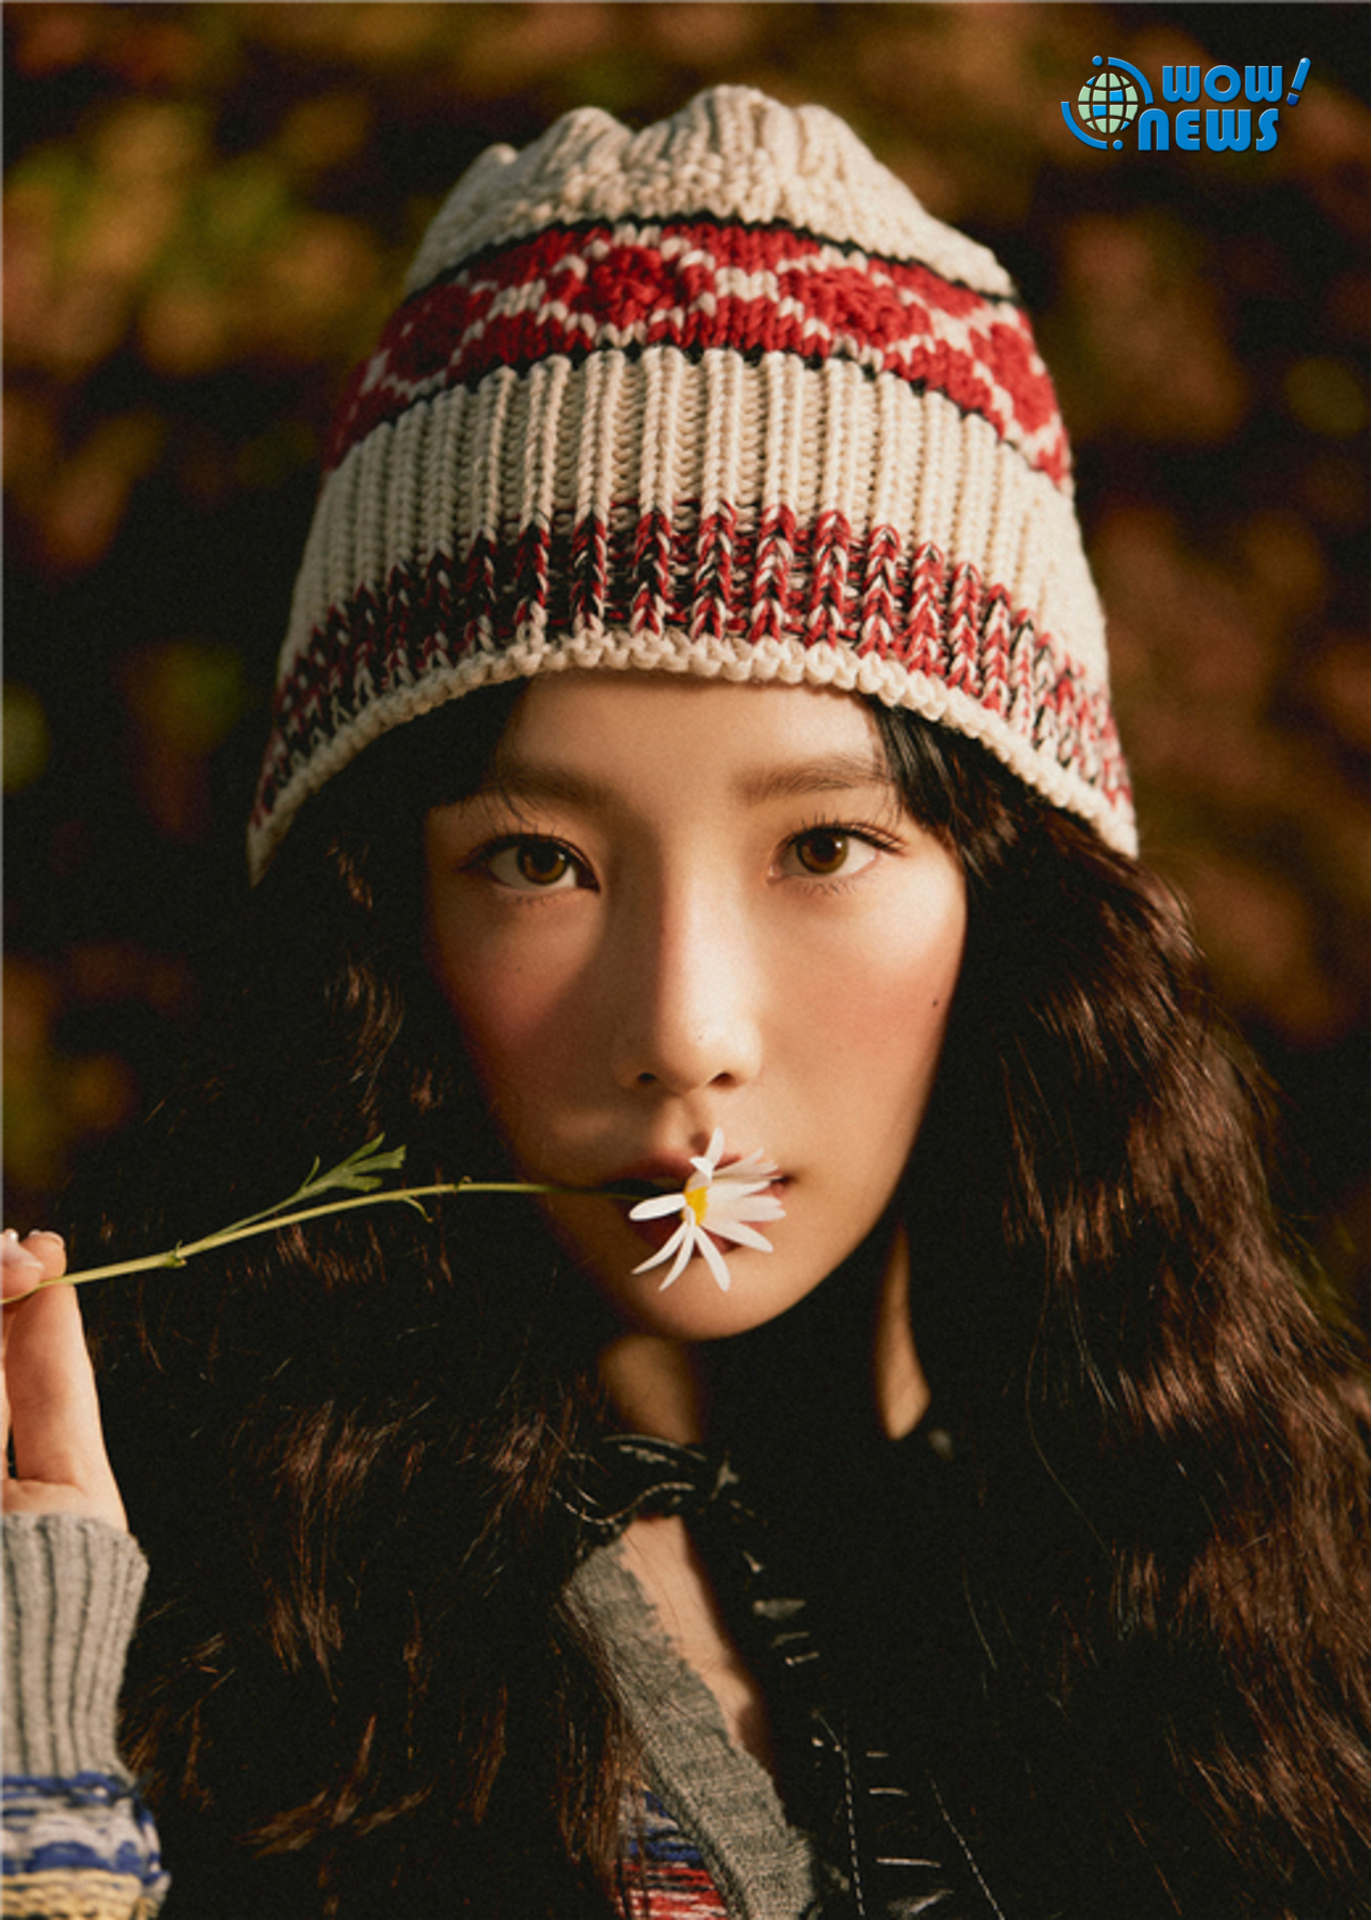 少女时代金泰妍公开清新气质的近况照片 美丽的眼睛令人心动_即时尚